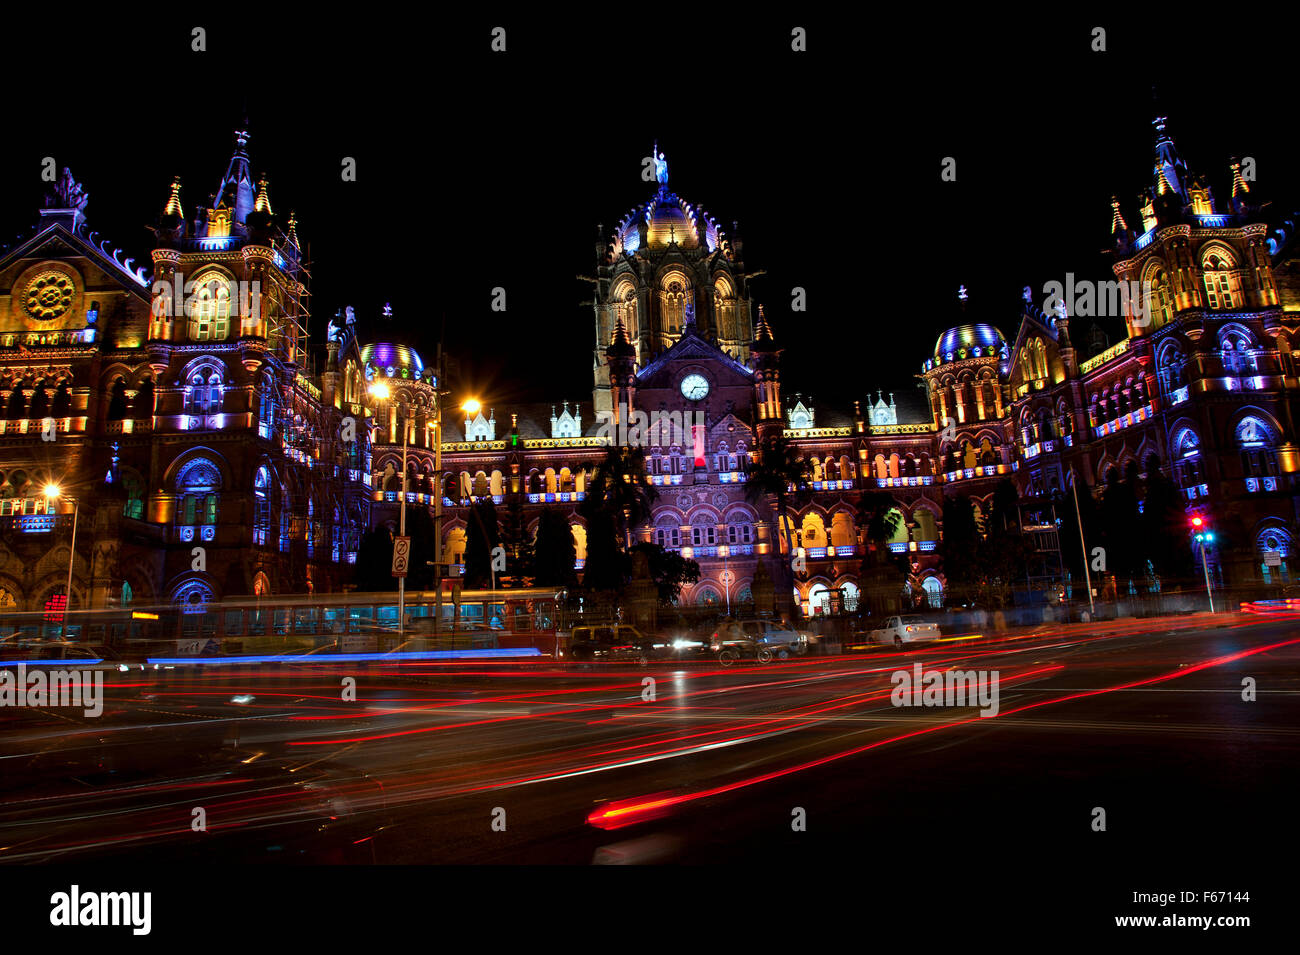 L'image de la CST a été prise à Mumbai, Inde Banque D'Images